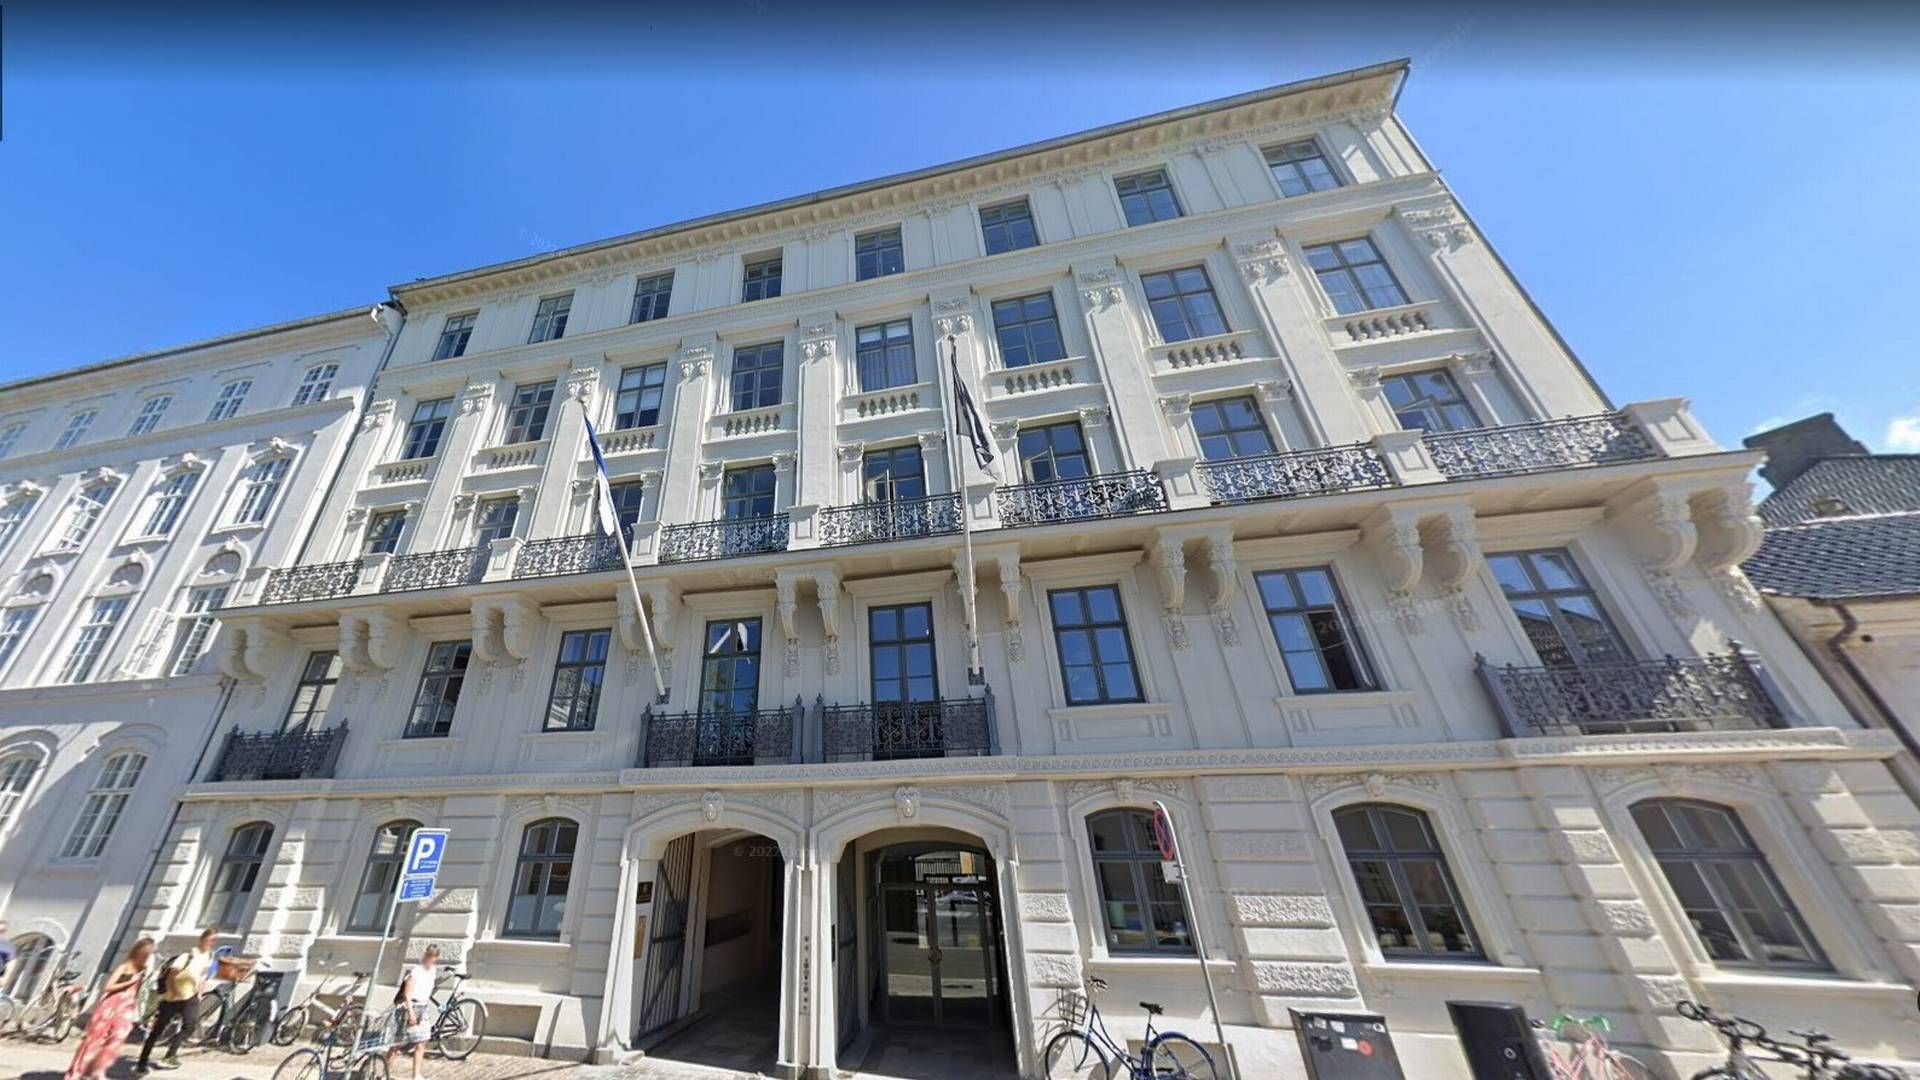 Schjødt opplyser til AdvokatWatch at advokatene i Schjødt København skal holde til her, i Frederiksgade 21. | Foto: Google Street View